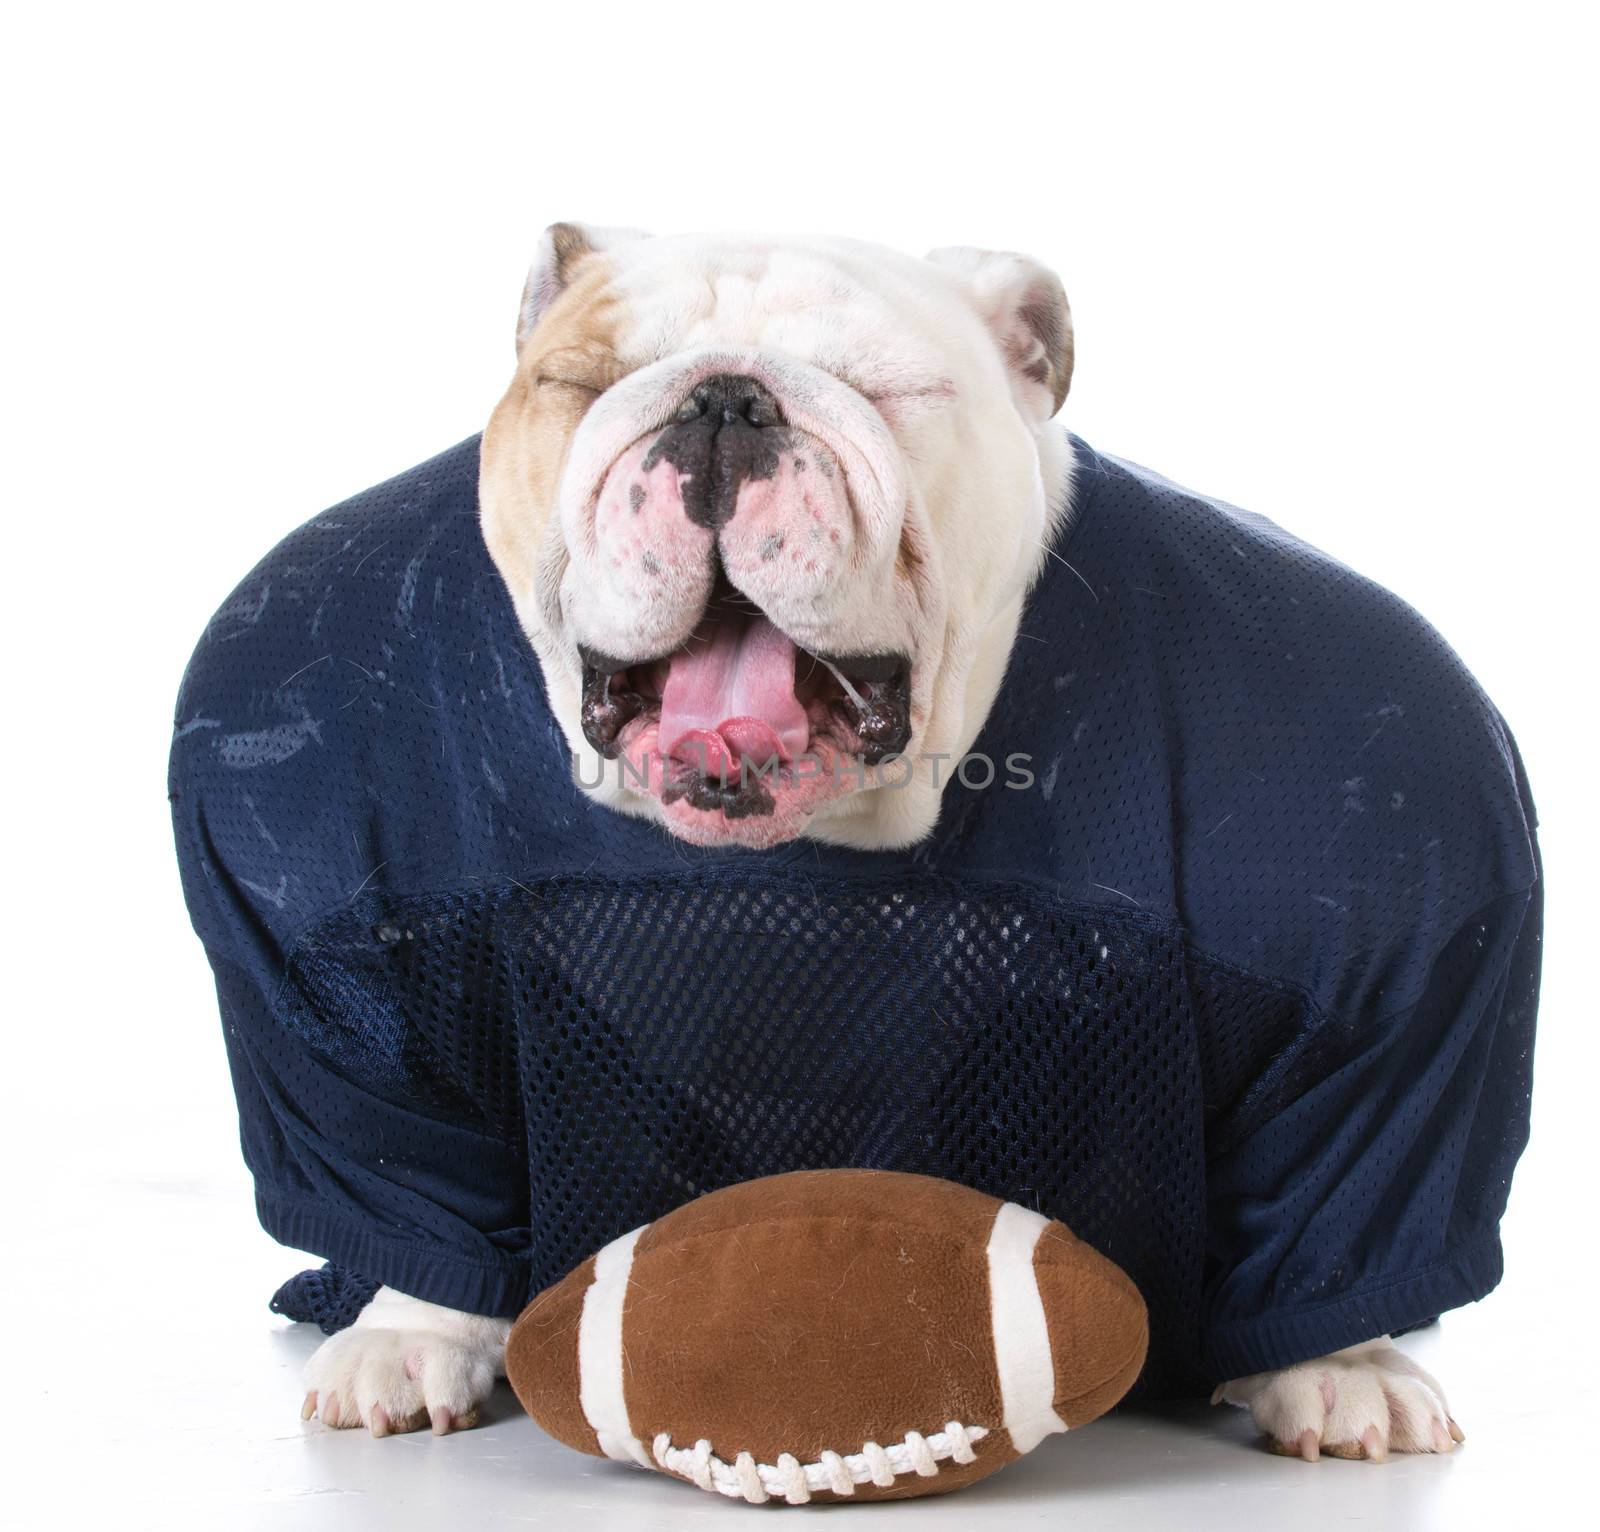 english bulldog wearing football jersey on white background